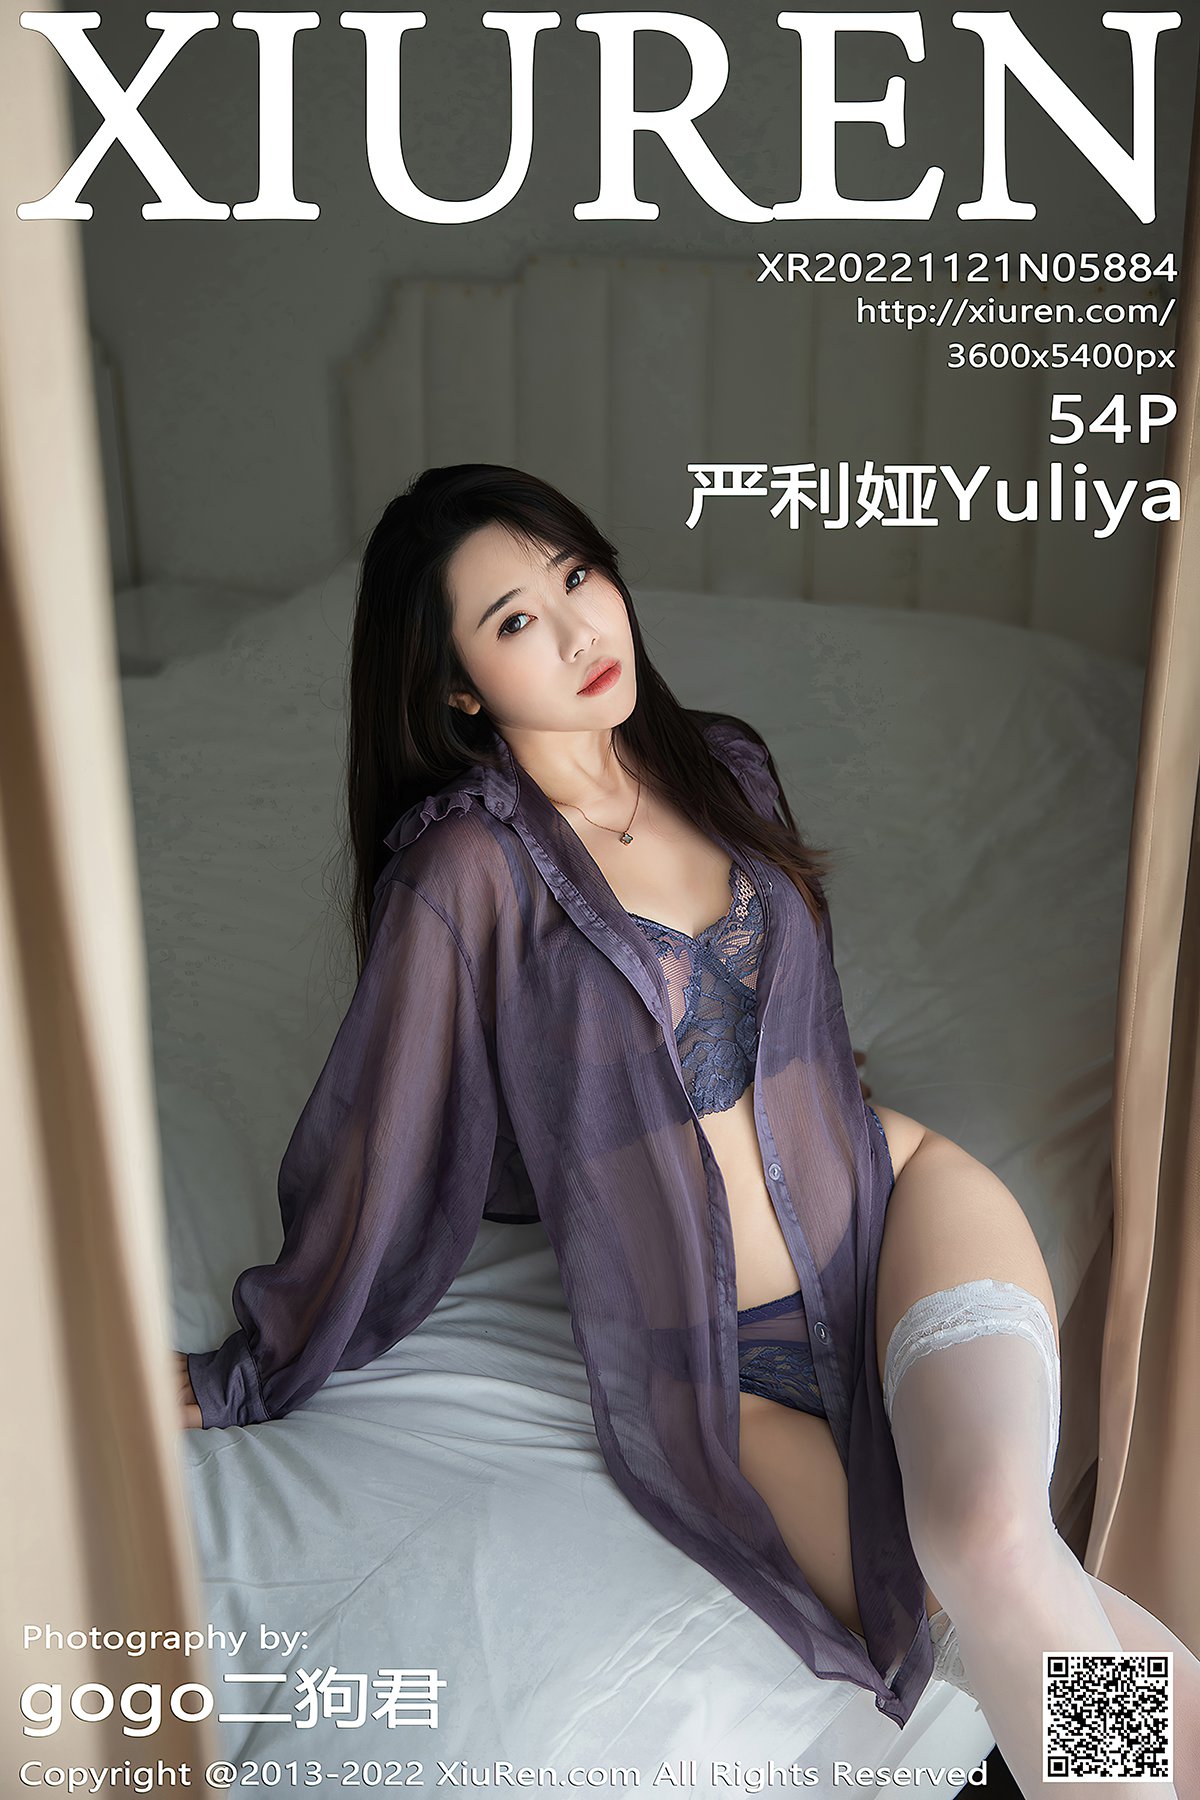 [XIUREN] No.5884 严利娅Yuliya